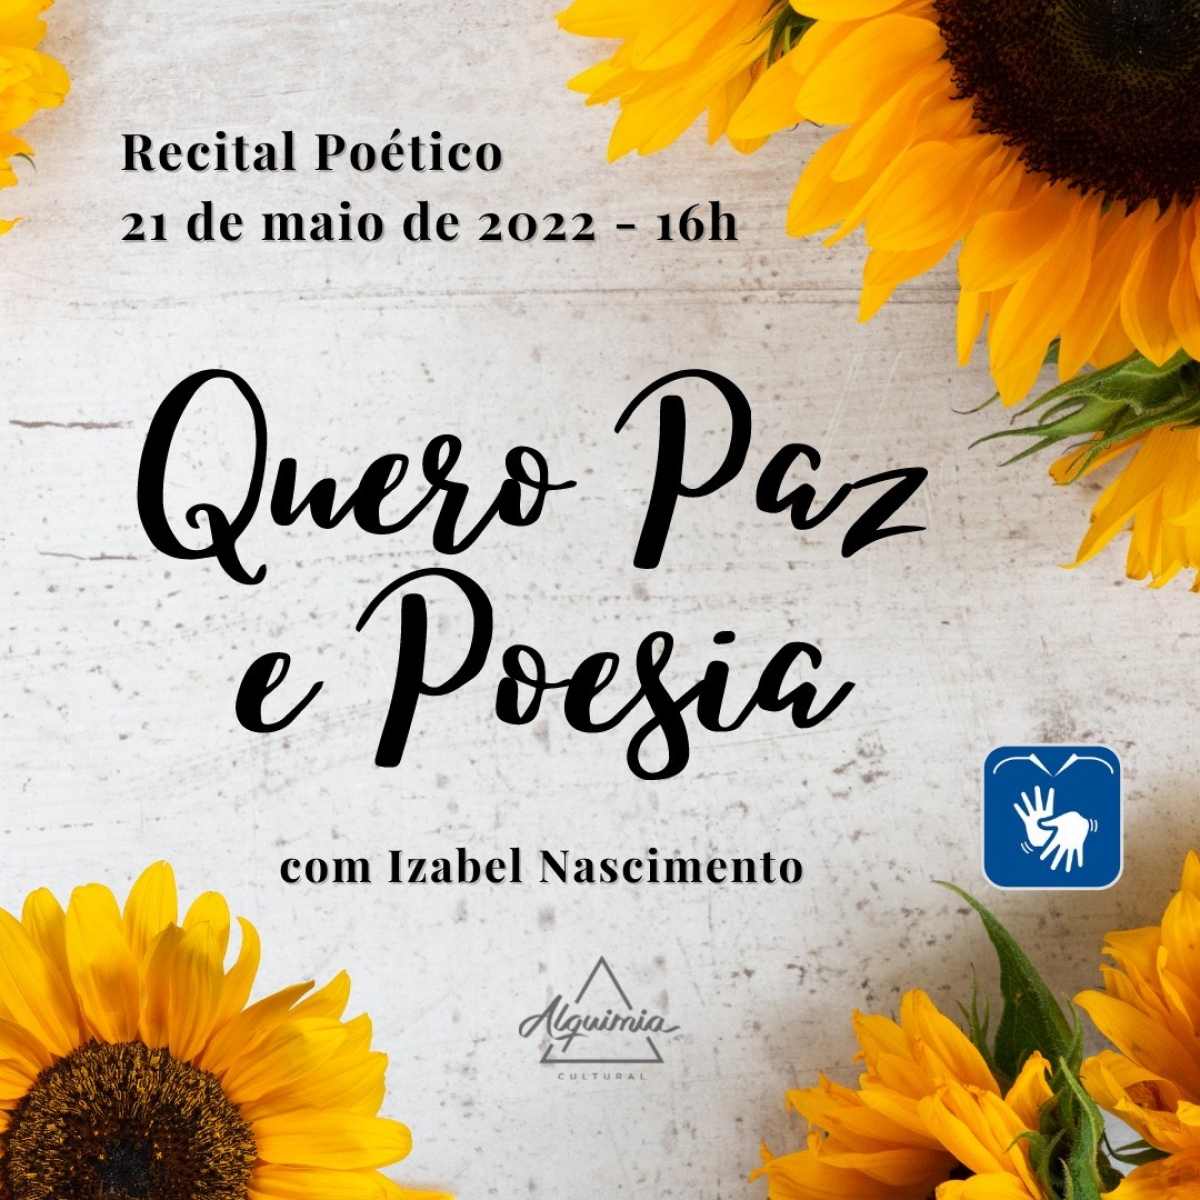 Izabel Nascimento realiza Recital Poético "Quero Paz e Poesia" - Imagem: Divulgação